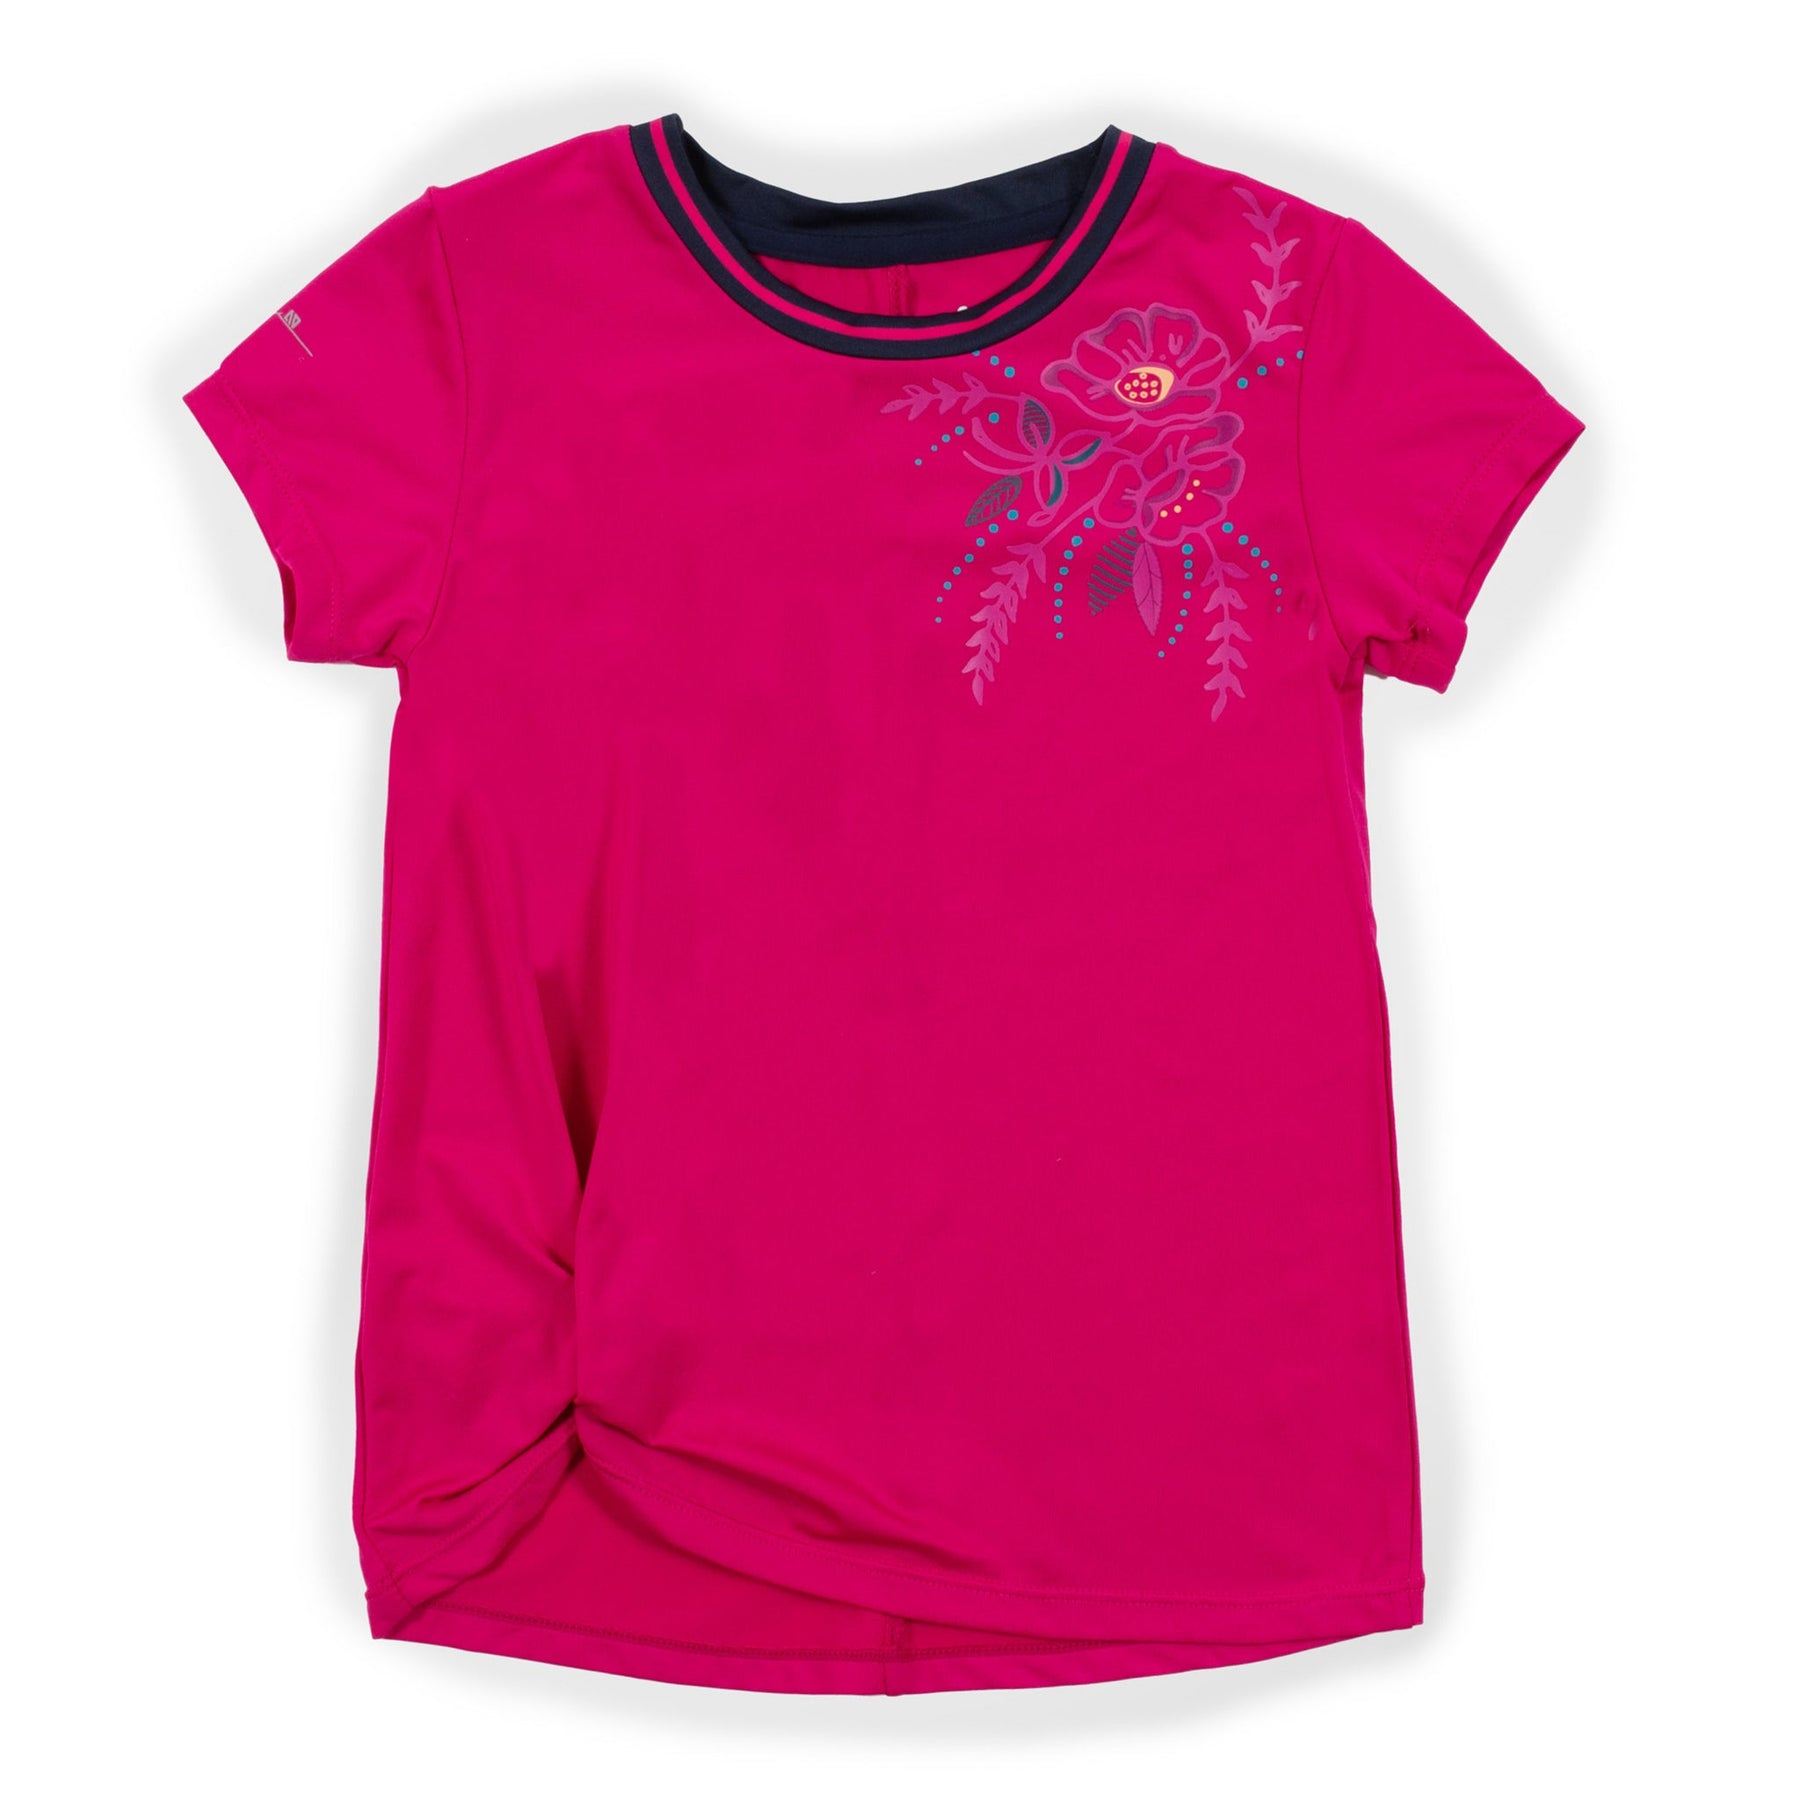 T-shirt athlétique pour enfant fille par Nanö | F23A82-01 Fuchsia | Boutique Flos, vêtements mode pour bébés et enfants